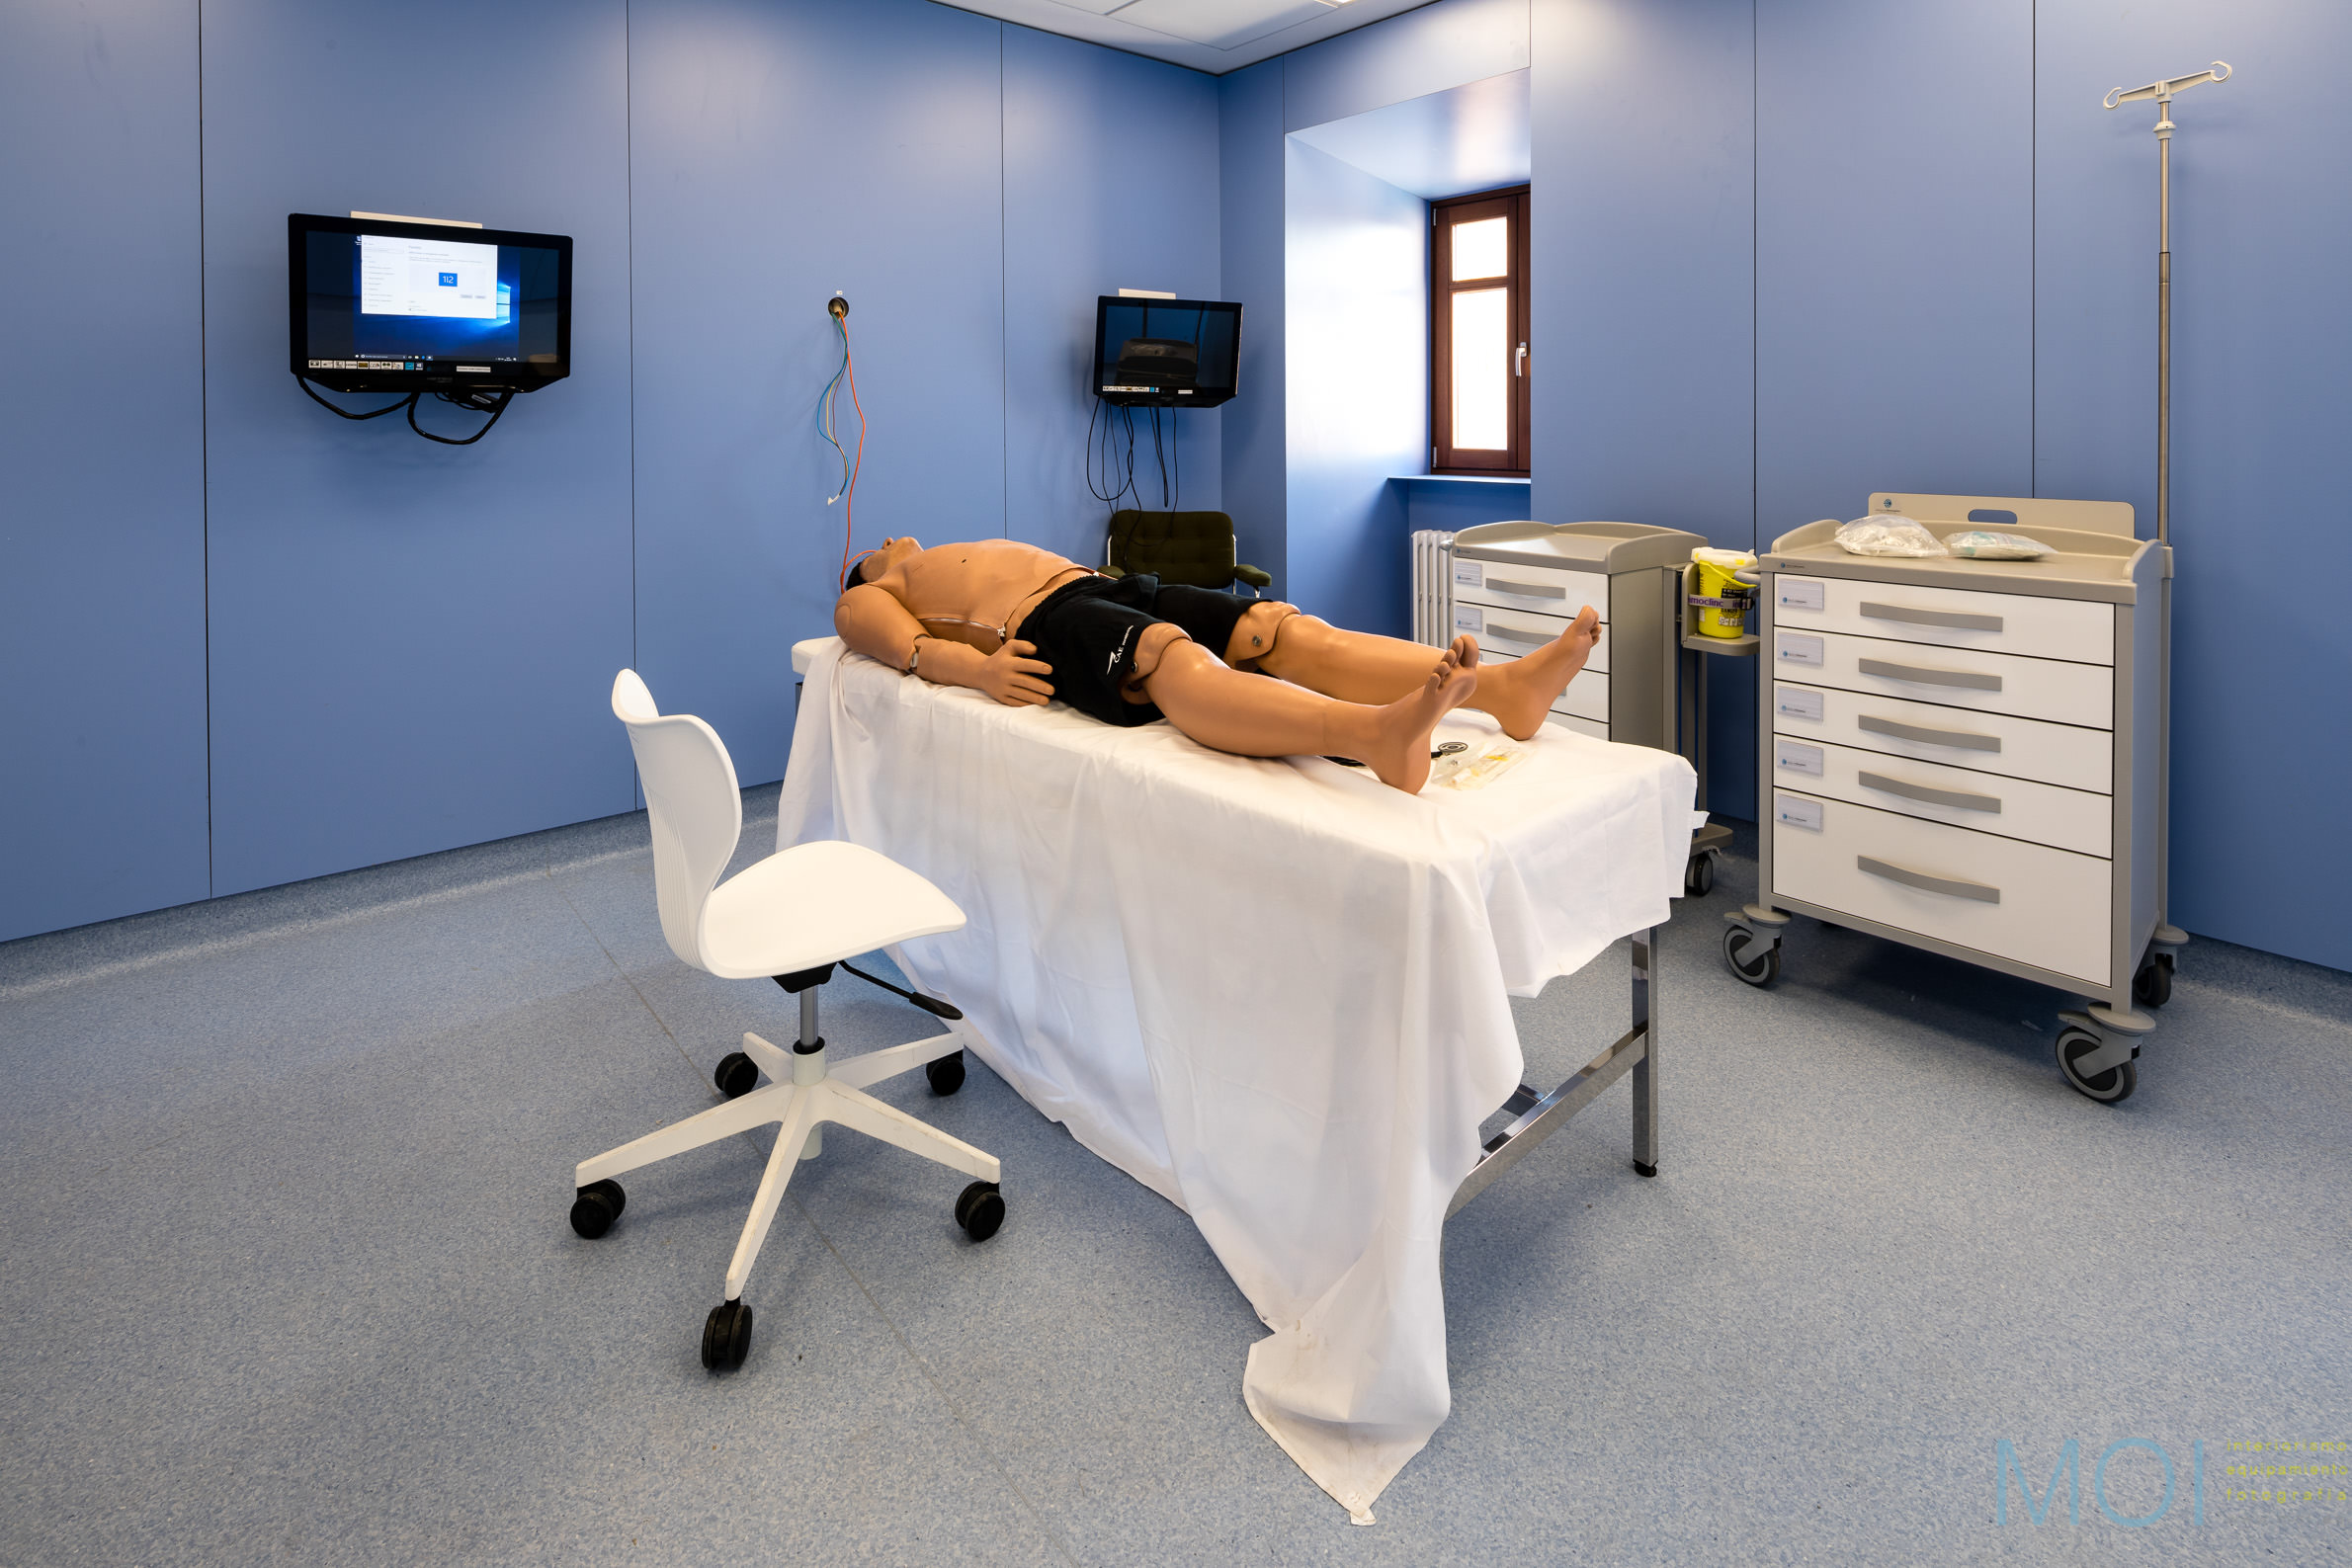 UPSA Simulacion medica © MOI | www.moi.es | interiorismo equipamiento fotografia